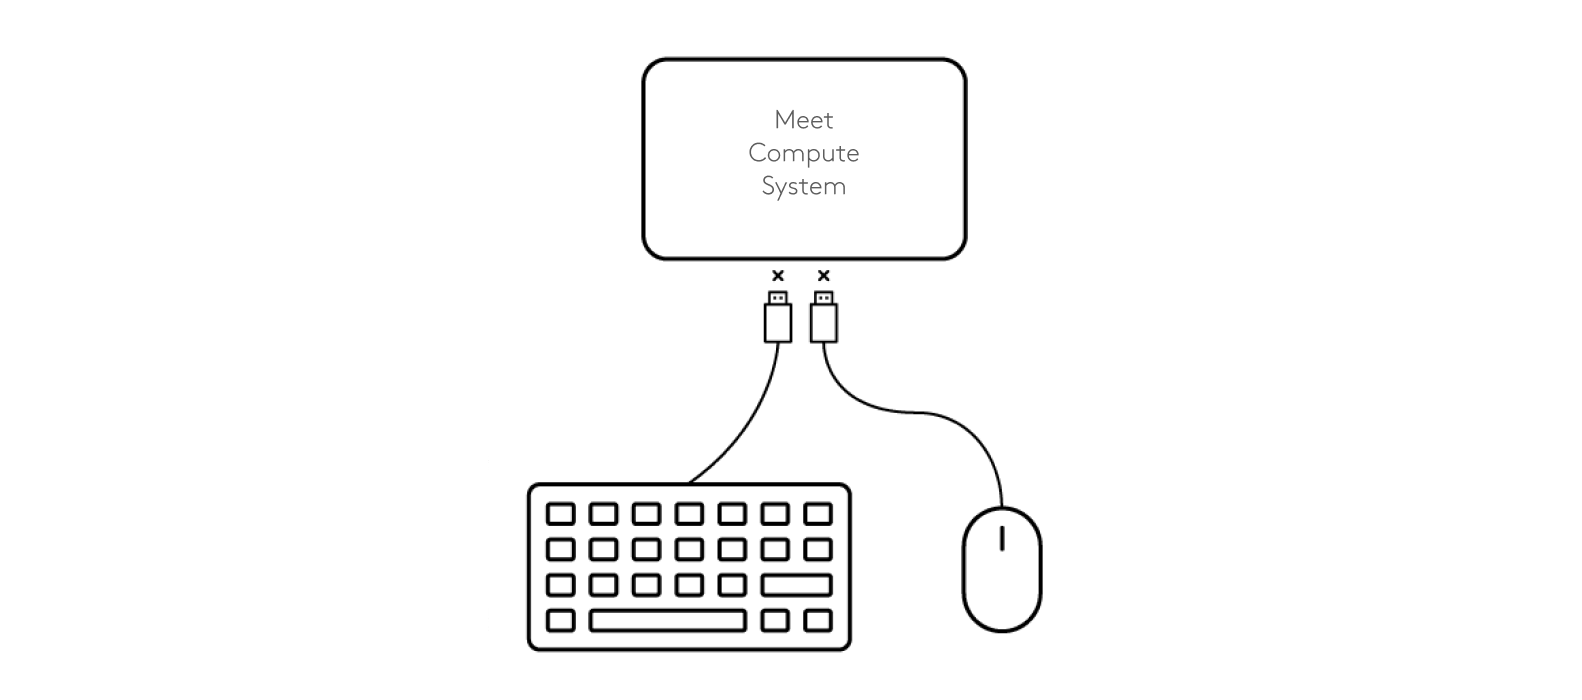 Schéma de déconnexion du clavier et de la souris au système Meet Compute